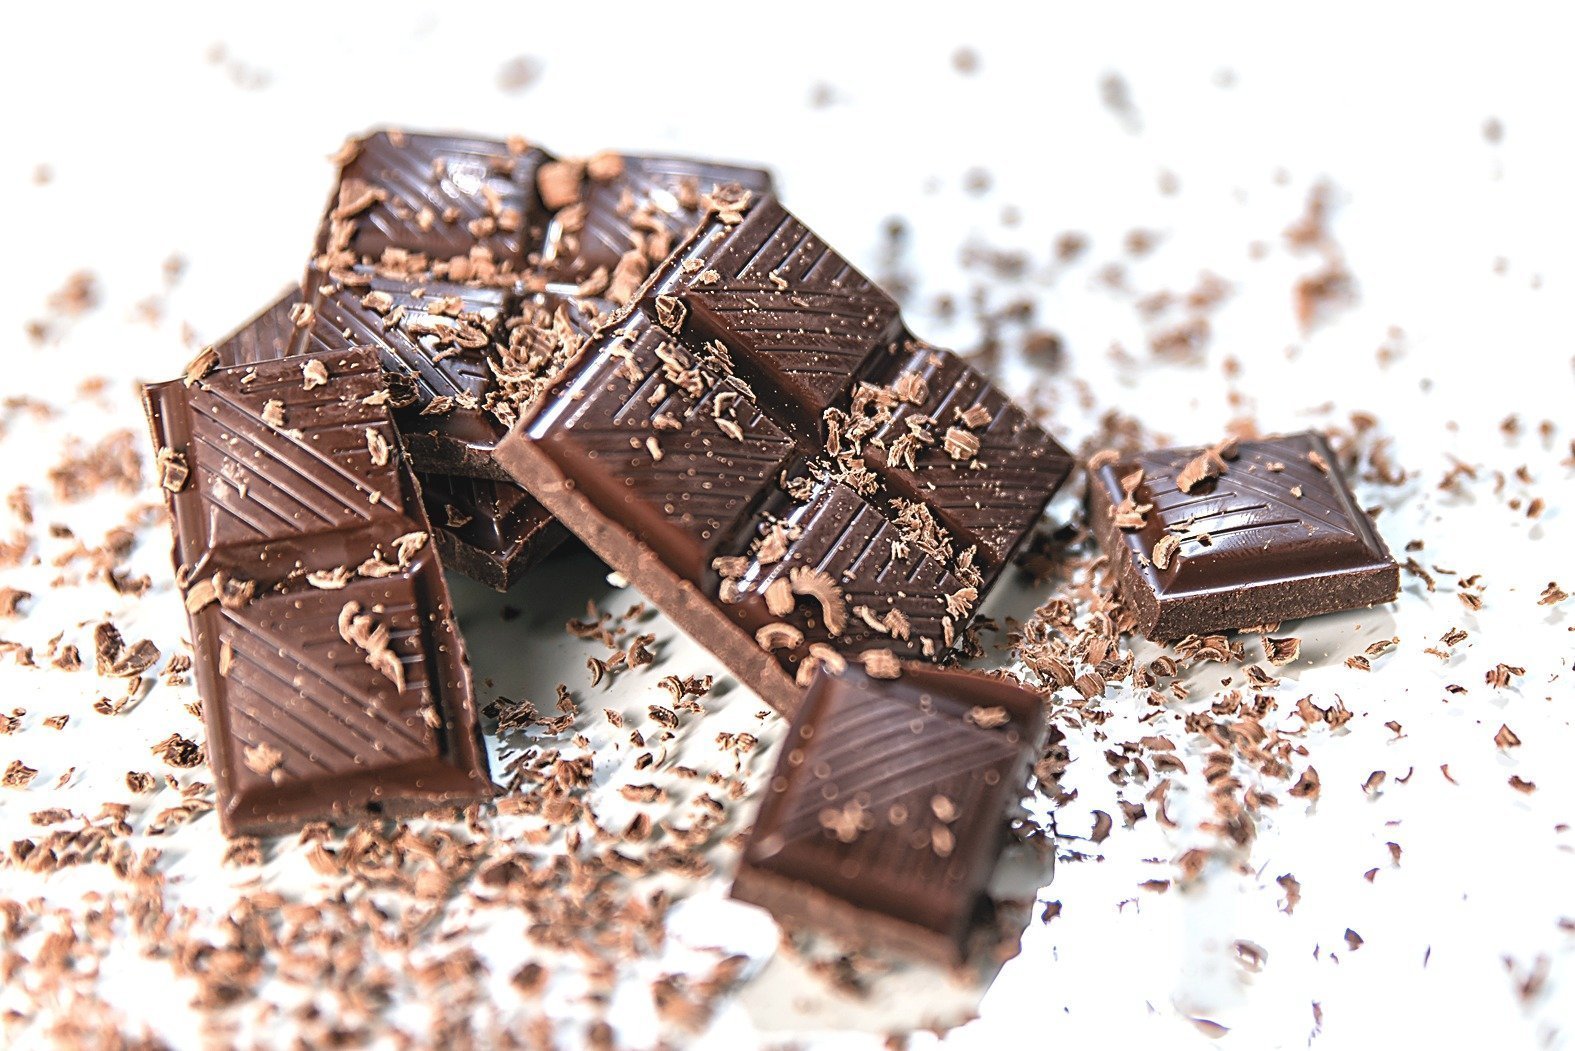 Šokoladas – vienas dažniausiai naudojamų ingredientų įvairiems konditeriniams gaminiams, pagamintas iš fermentuotų skrudintų maltų kakavos pupelių.„123rf.com“ nuotr.